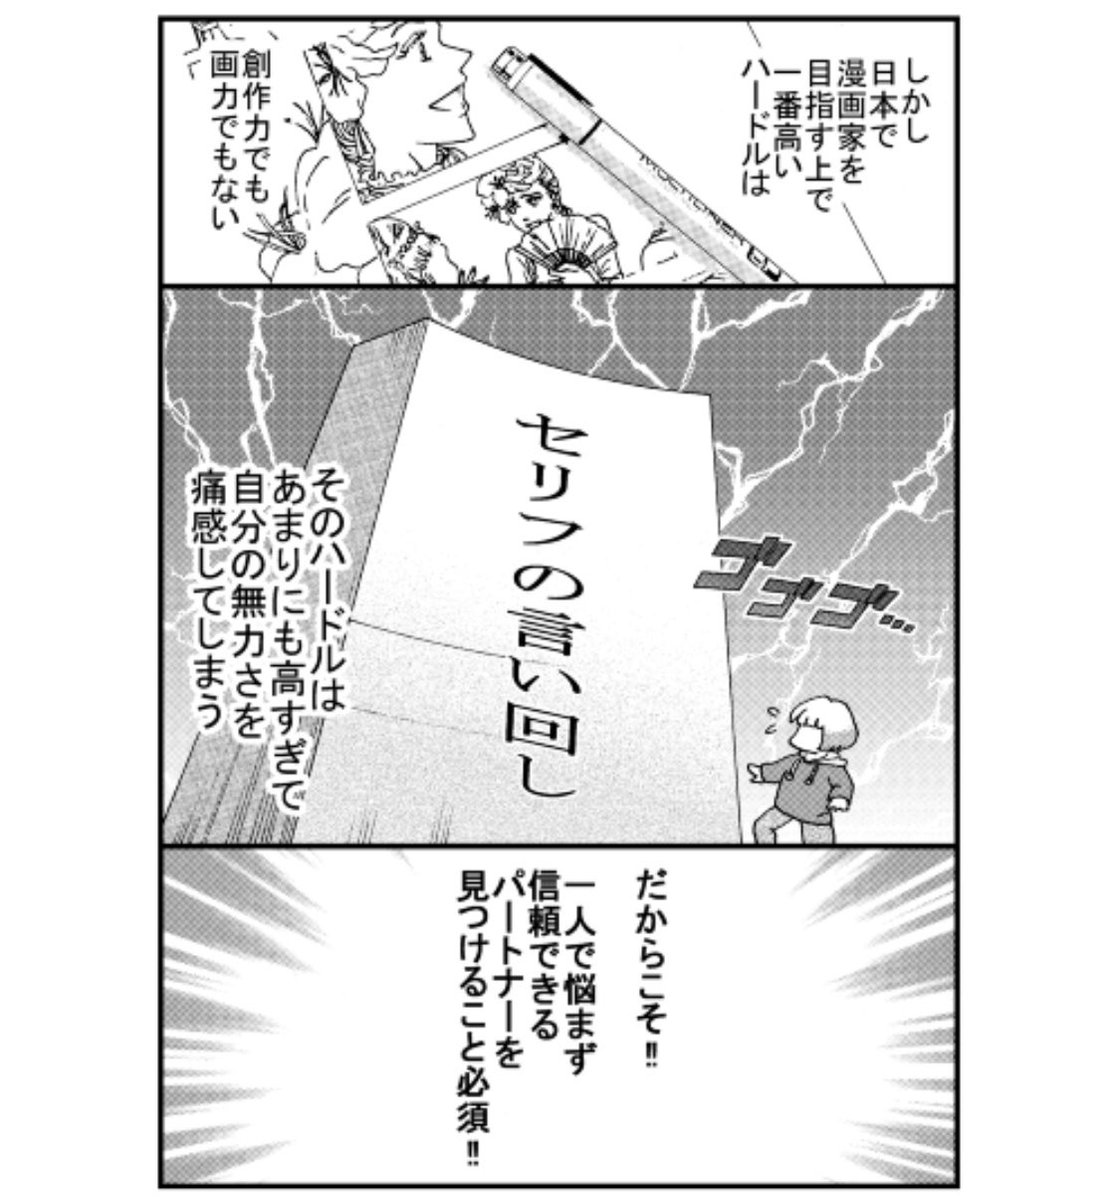 「ハマダは天然色」28をアップしました!
外国人の私が日本で漫画家を目指すのに壁が高すぎっ!
Pixiv:
 https://t.co/AJgnFWAD59

拡大して読みたい方:
https://t.co/Akc3qvZFCi

#漫画が読めるハッシュタグ 
#エッセイ漫画 
#国際結婚 